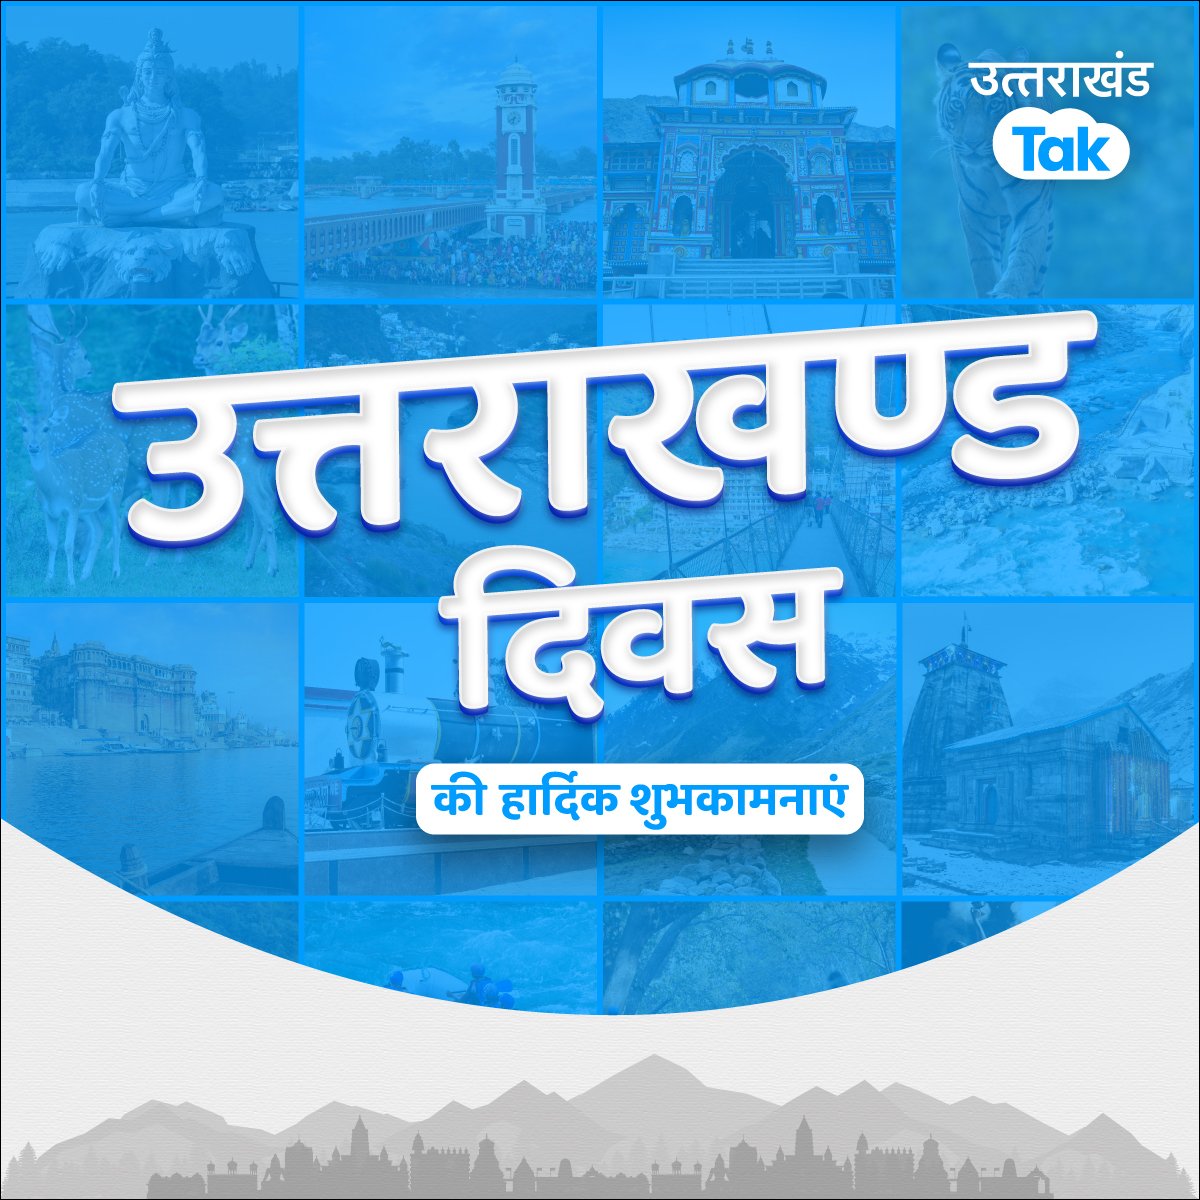 उत्तराखंड राज्य स्थापना दिवस की हार्दिक शुभकामनाएं।

#उत्तराखंड #Uttarakhand